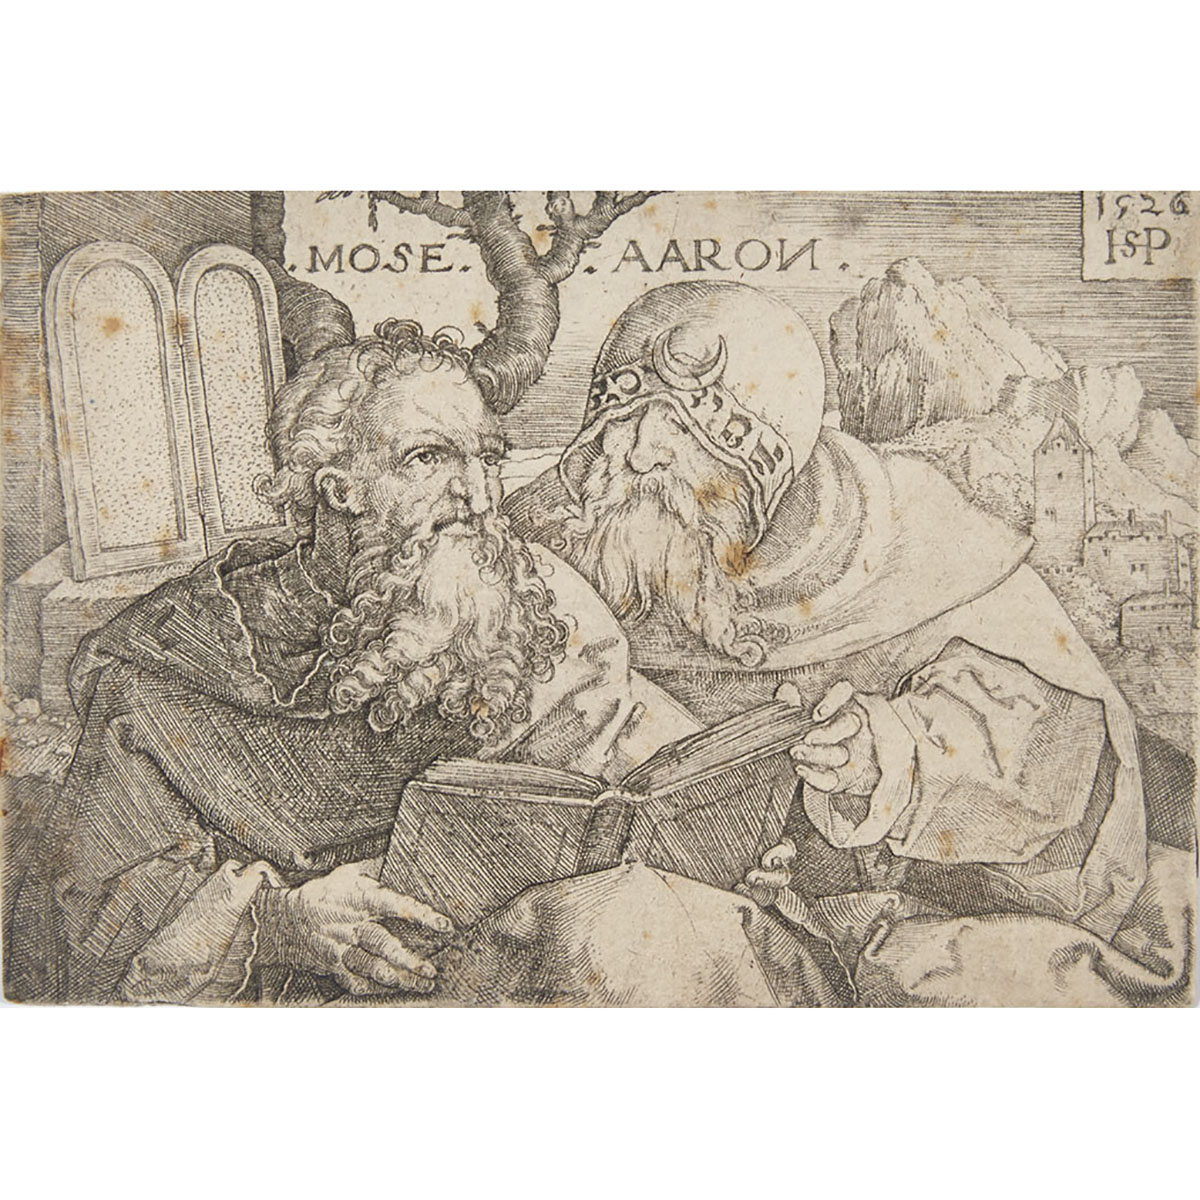 Hans Sebald Beham (1500-1550)